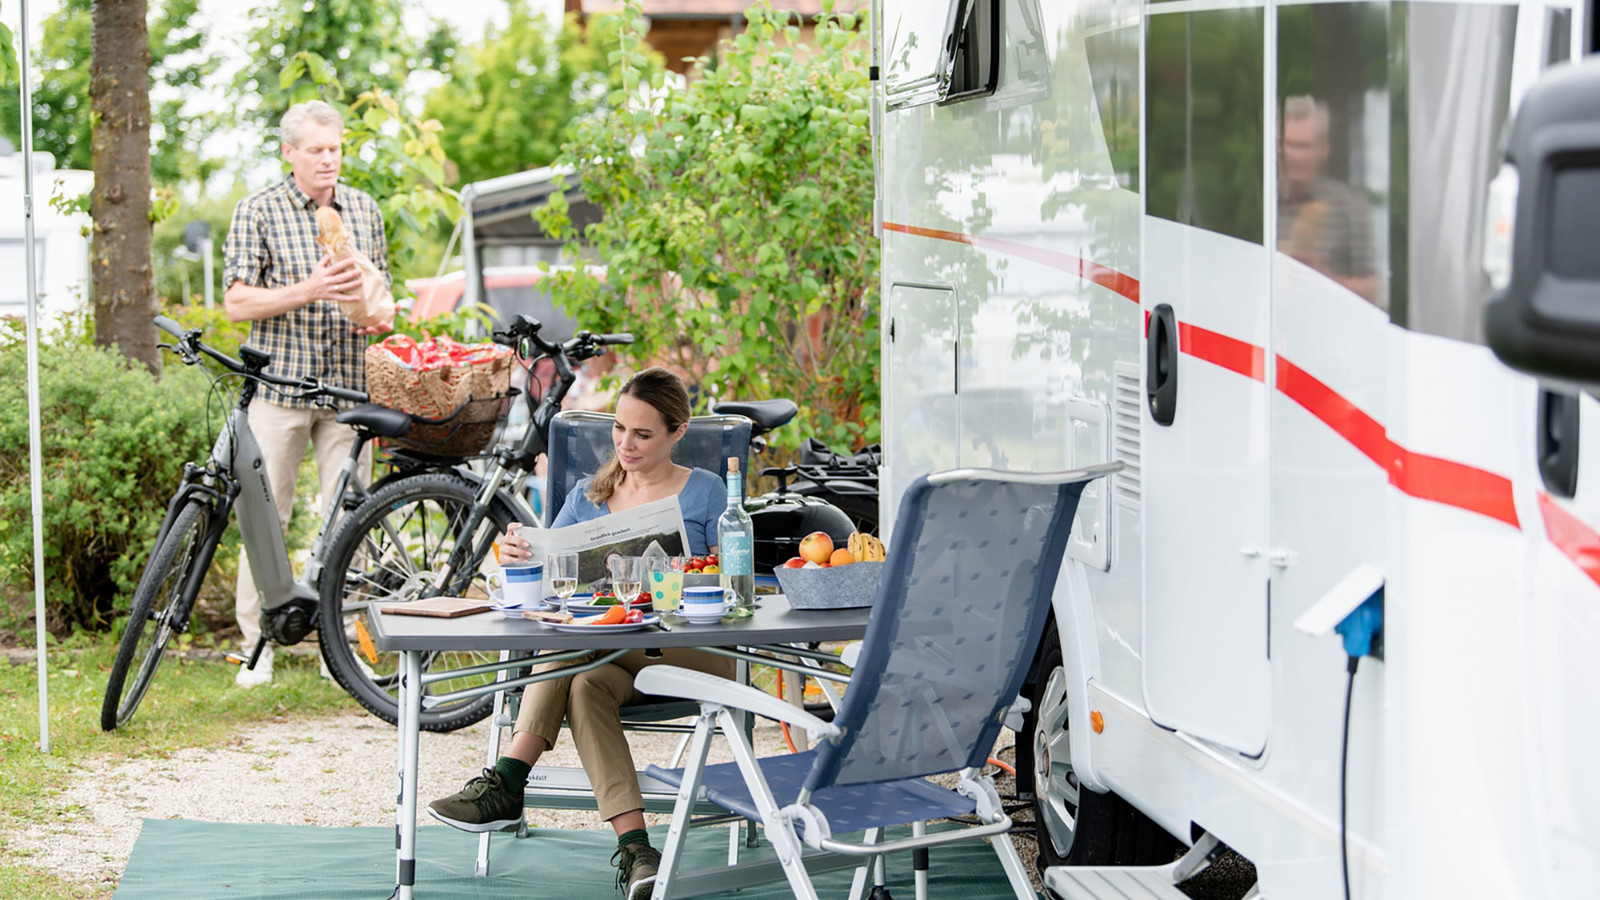 Die Campinganlagen im niederbayerischen Bad Füssing bieten ihren Gästen Camping mit Gesundheitsplus - erholsames Wohlfühl-Camping auf Wunsch mit Fünf-Sterne-Komfort, die Heilkraft des Bad Füssinger Thermalwasser inklusive.